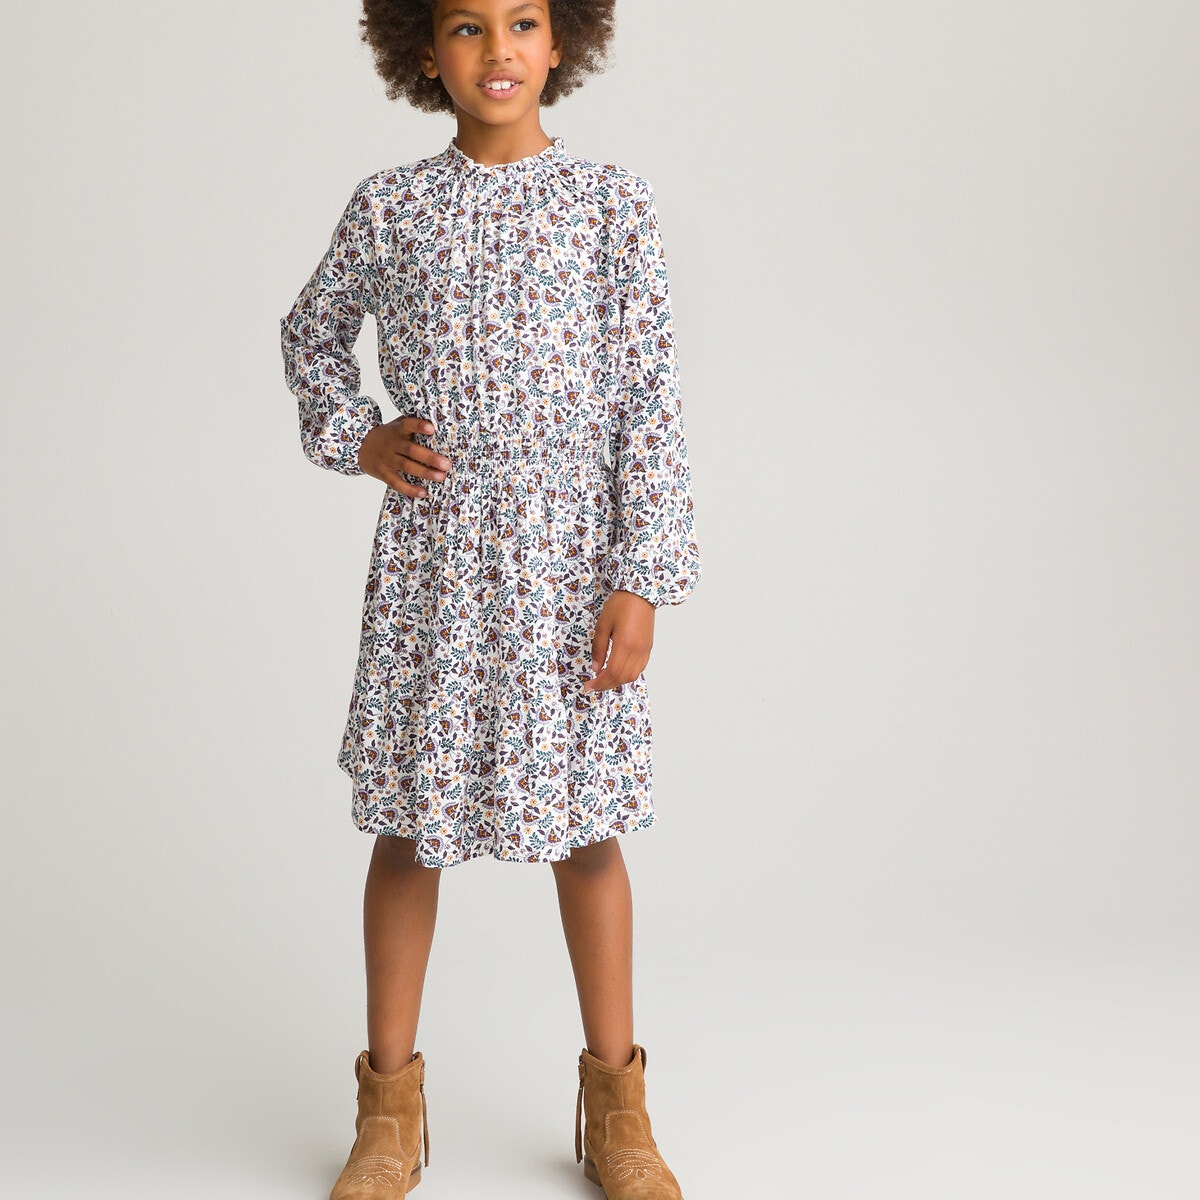 ΠΑΙΔΙ | Φορέματα | Μακριά ή 3/4 μανίκια Μακρυμάνικο φλοράλ φόρεμα, 3-12 ετών